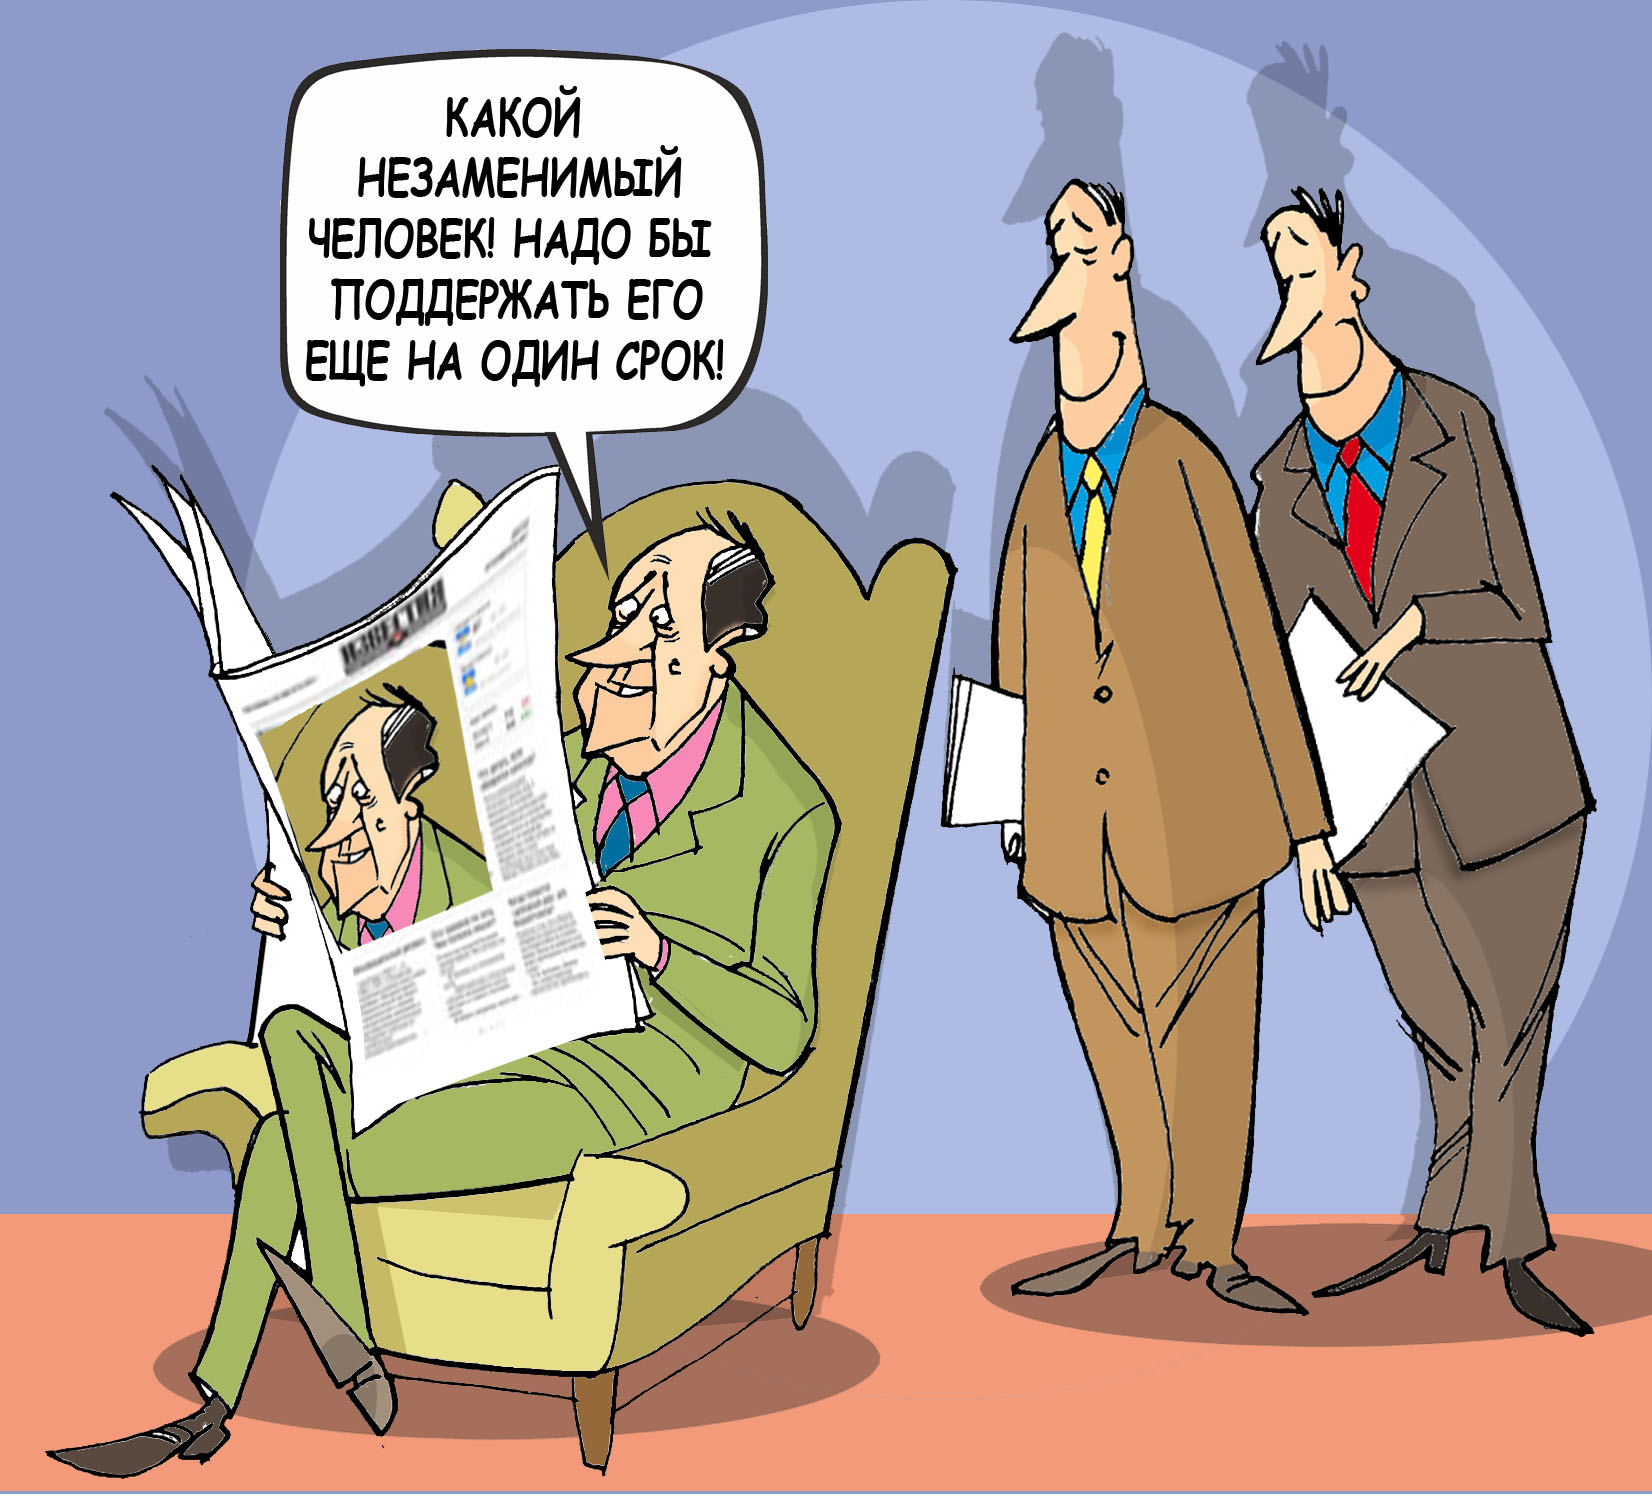 Незаменимый. Ну, разве 20 лет - это срок? #ПрезидентУР #Волков © Газета "День" 2012